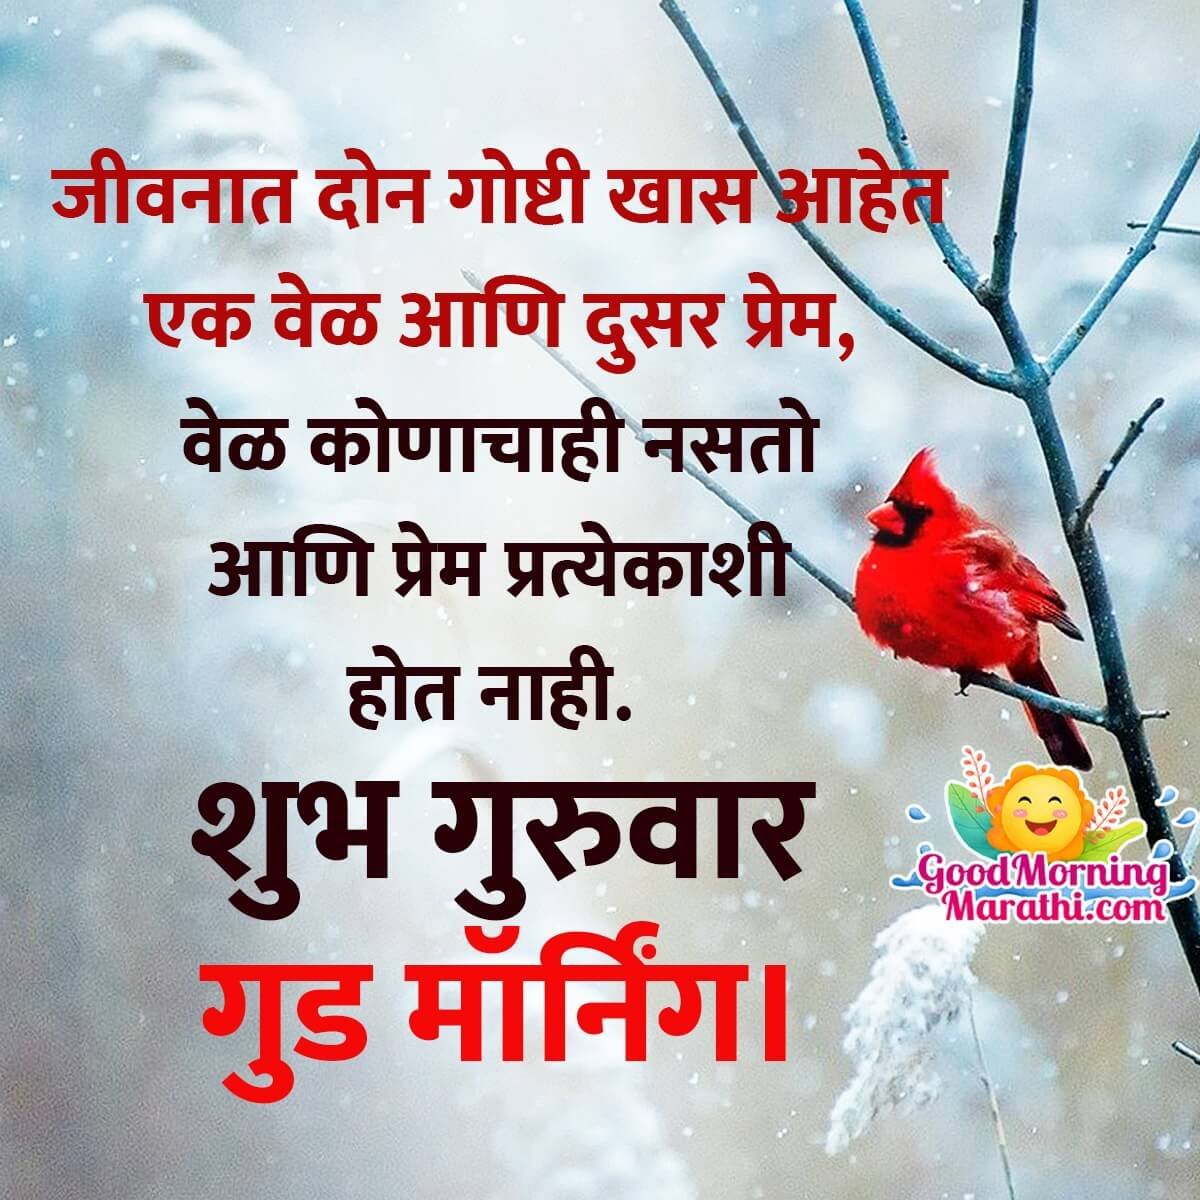 Shubh Guruvar Good Morning